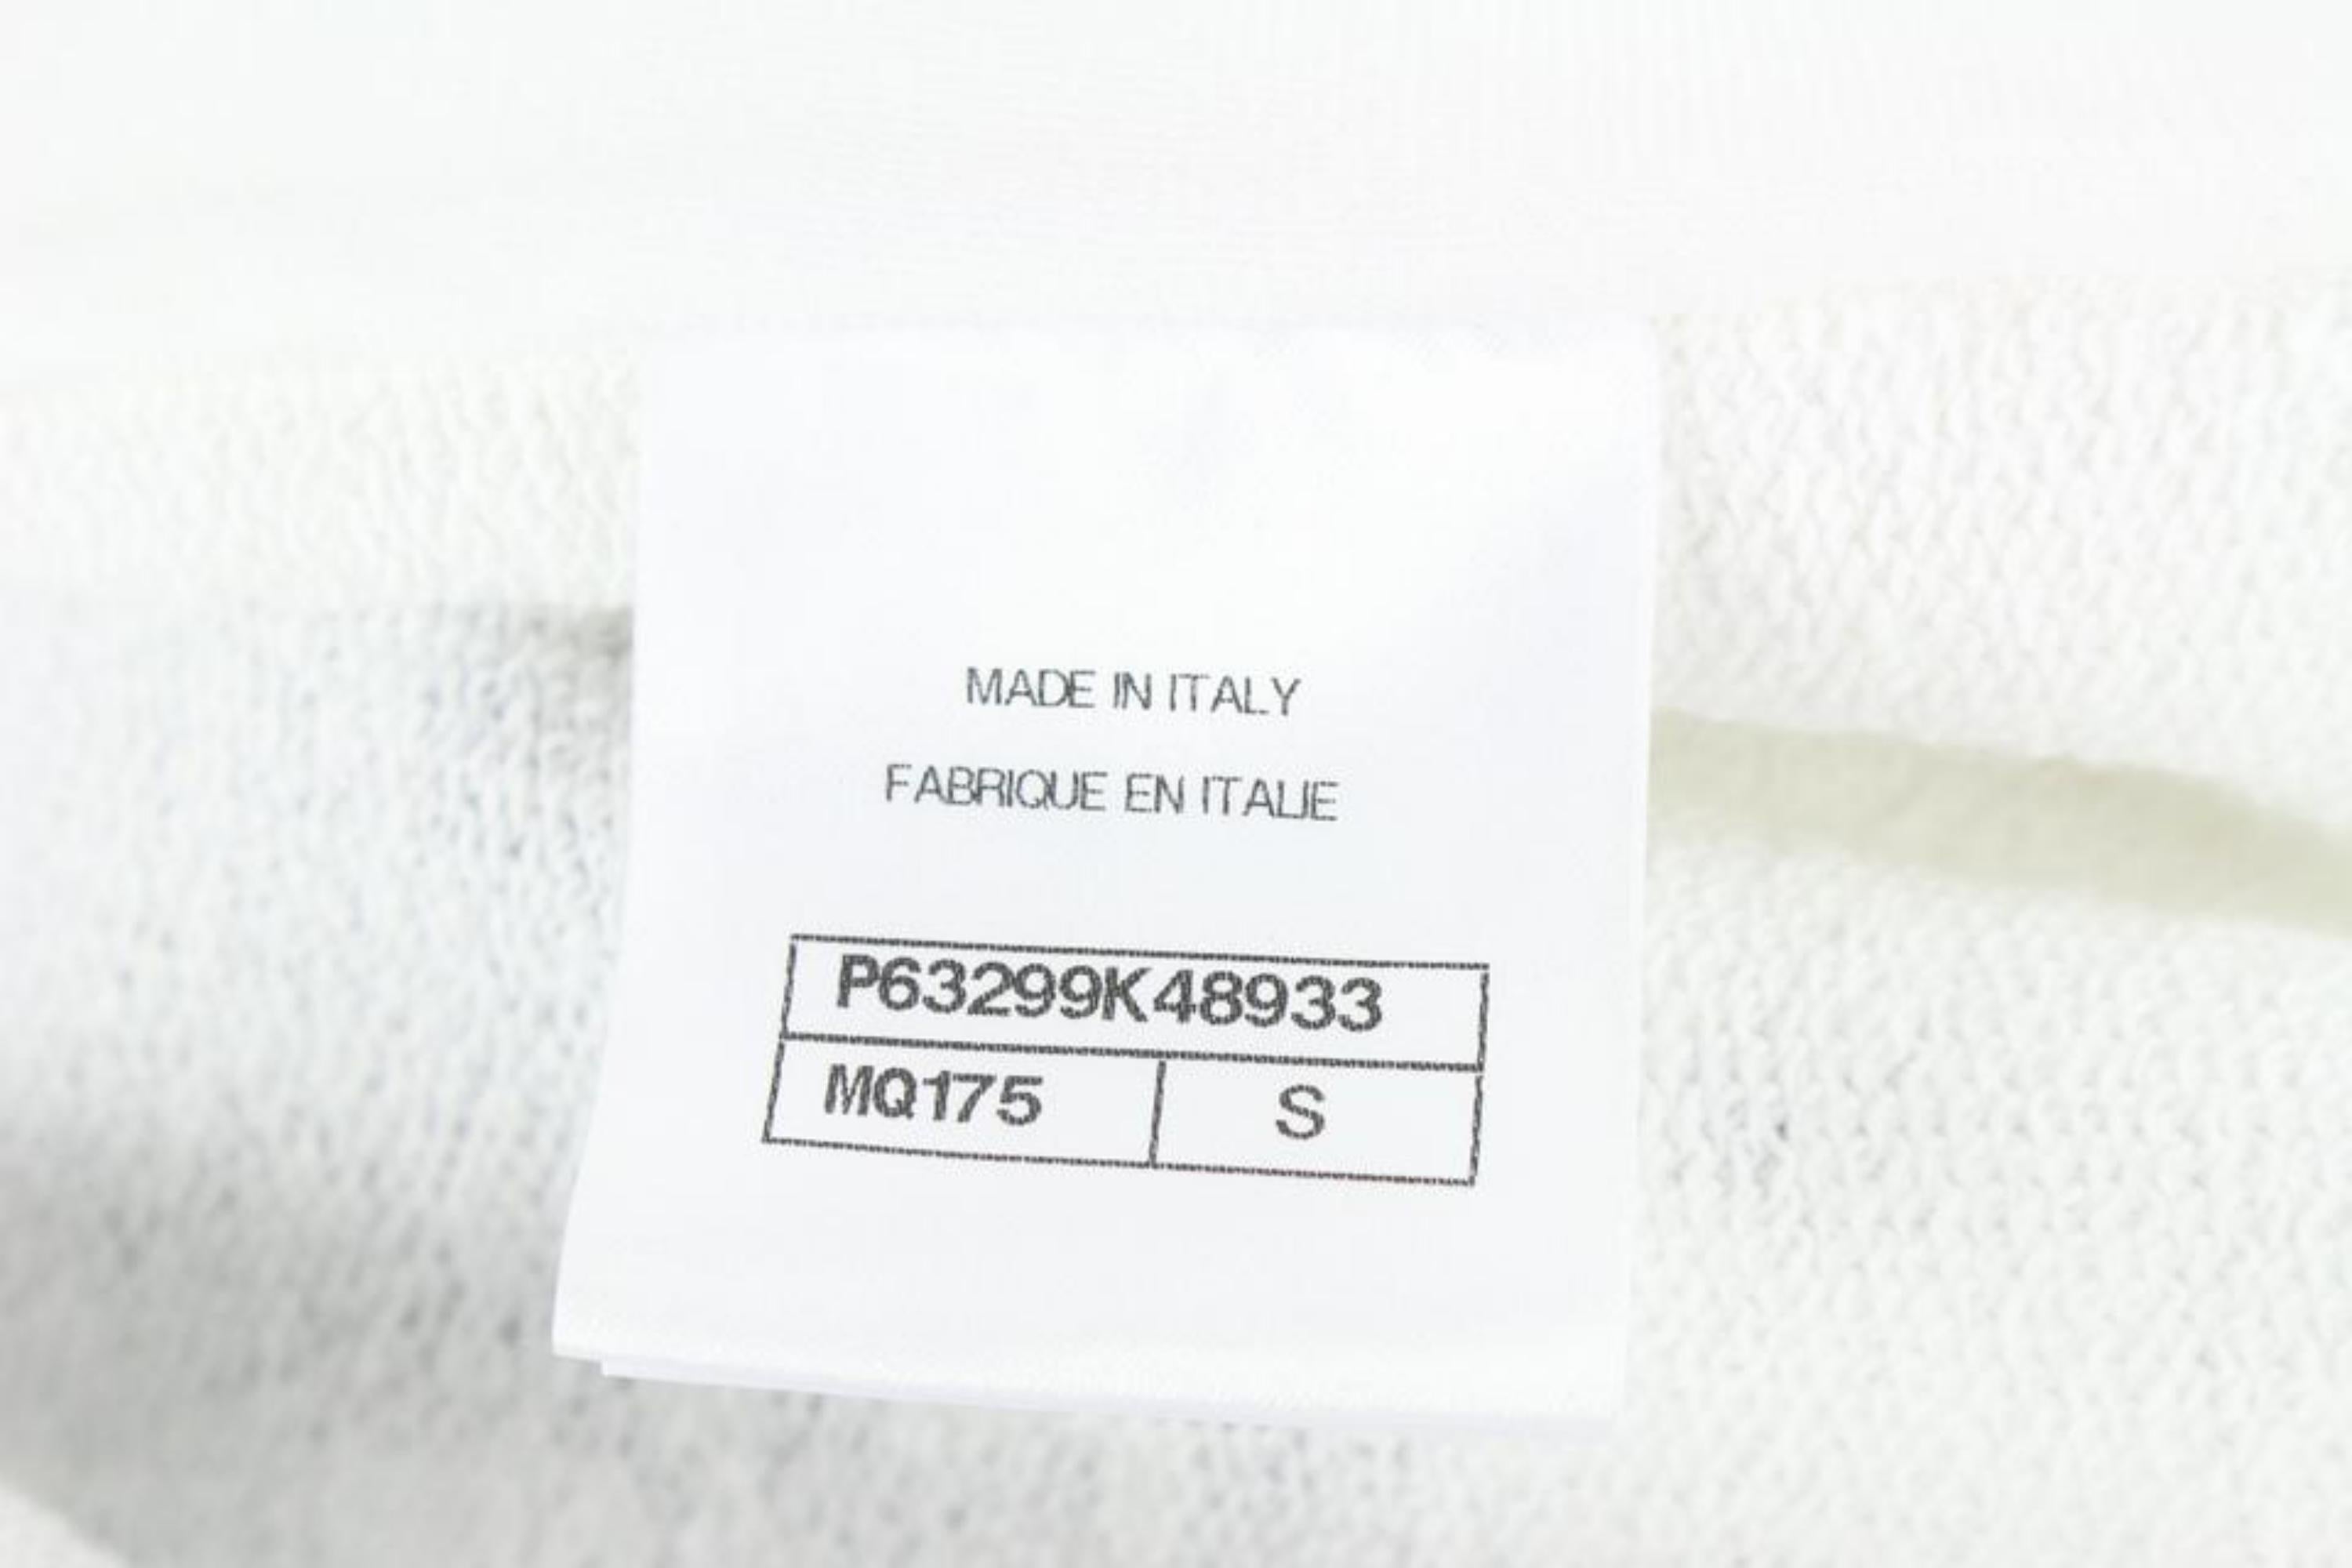 Chanel - Sweat-shirt à capuche avec fermeture éclair et logo CC, blanc, pour femme 112c1 3